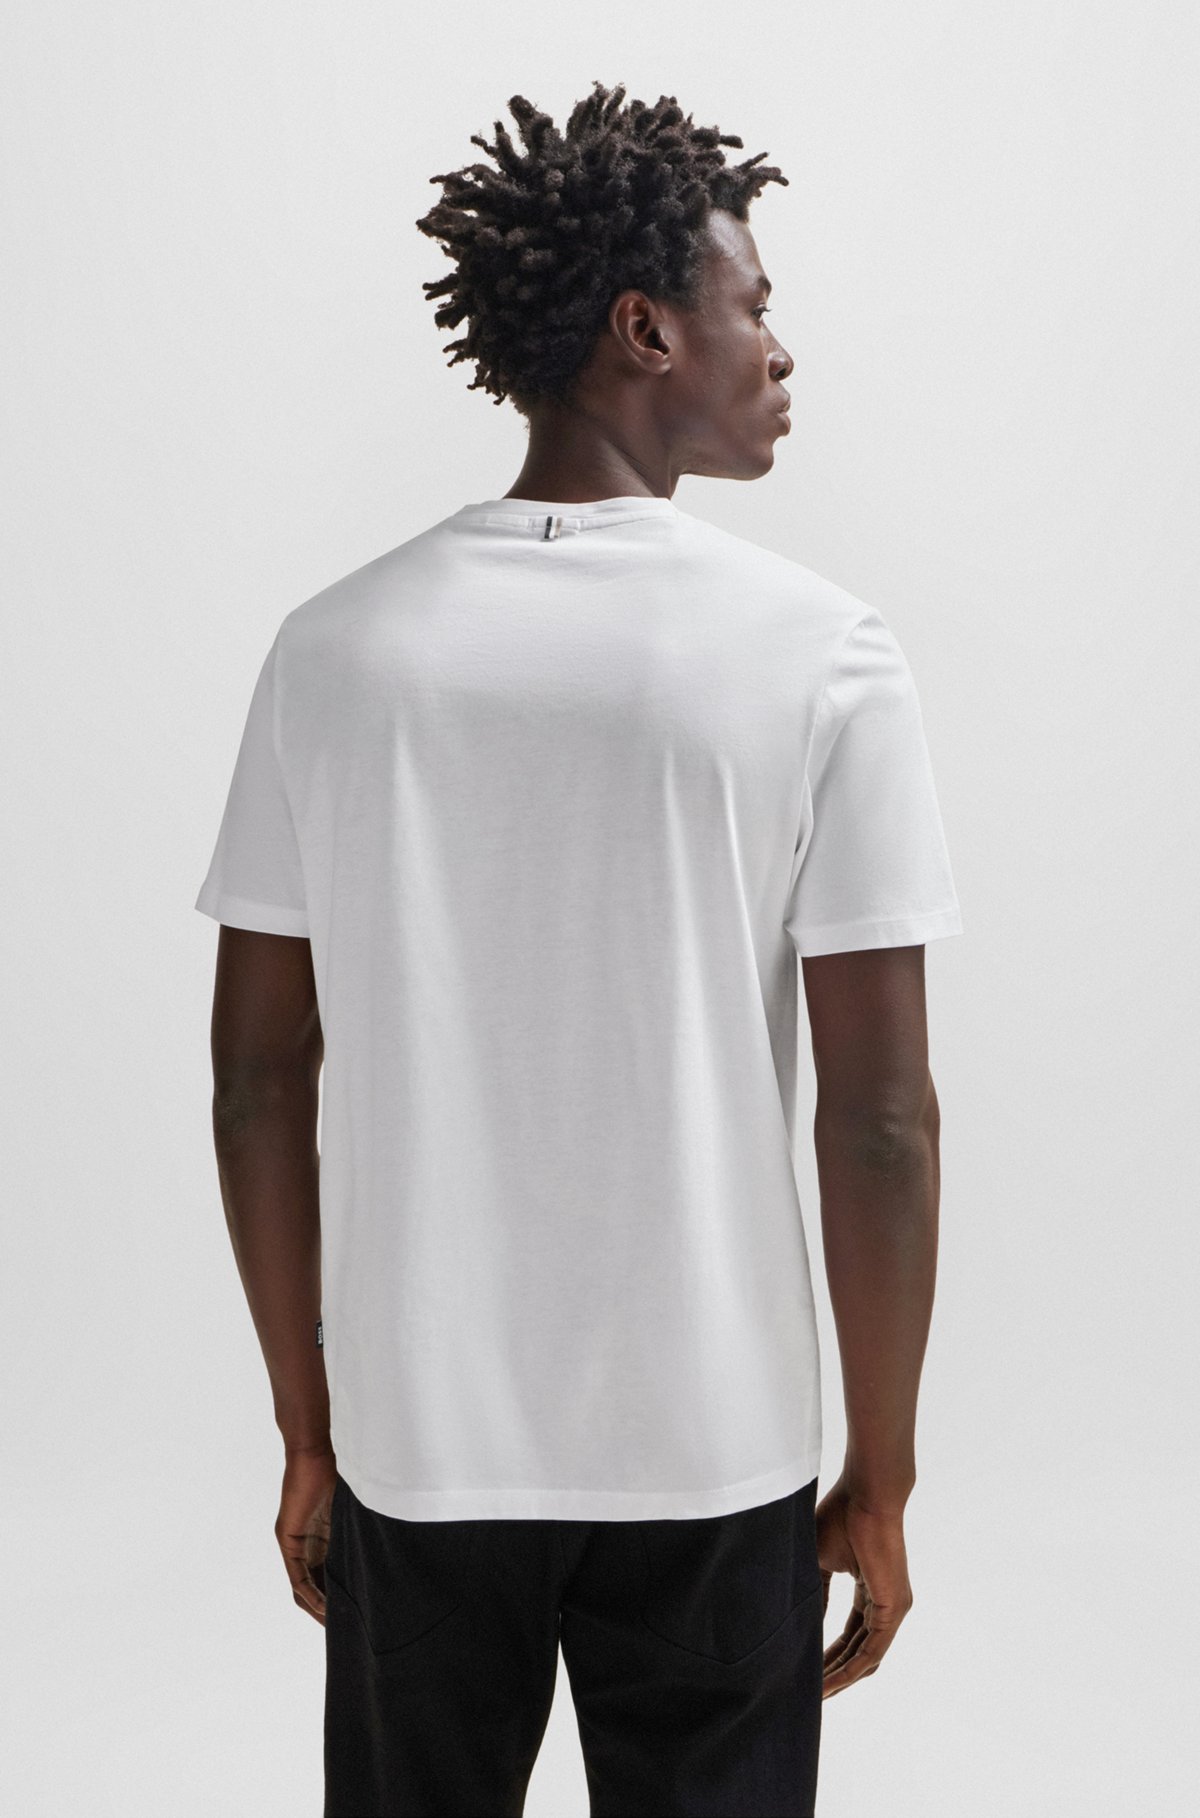 Slim-fit short-sleeved T-shirt in mercerized cotton, White